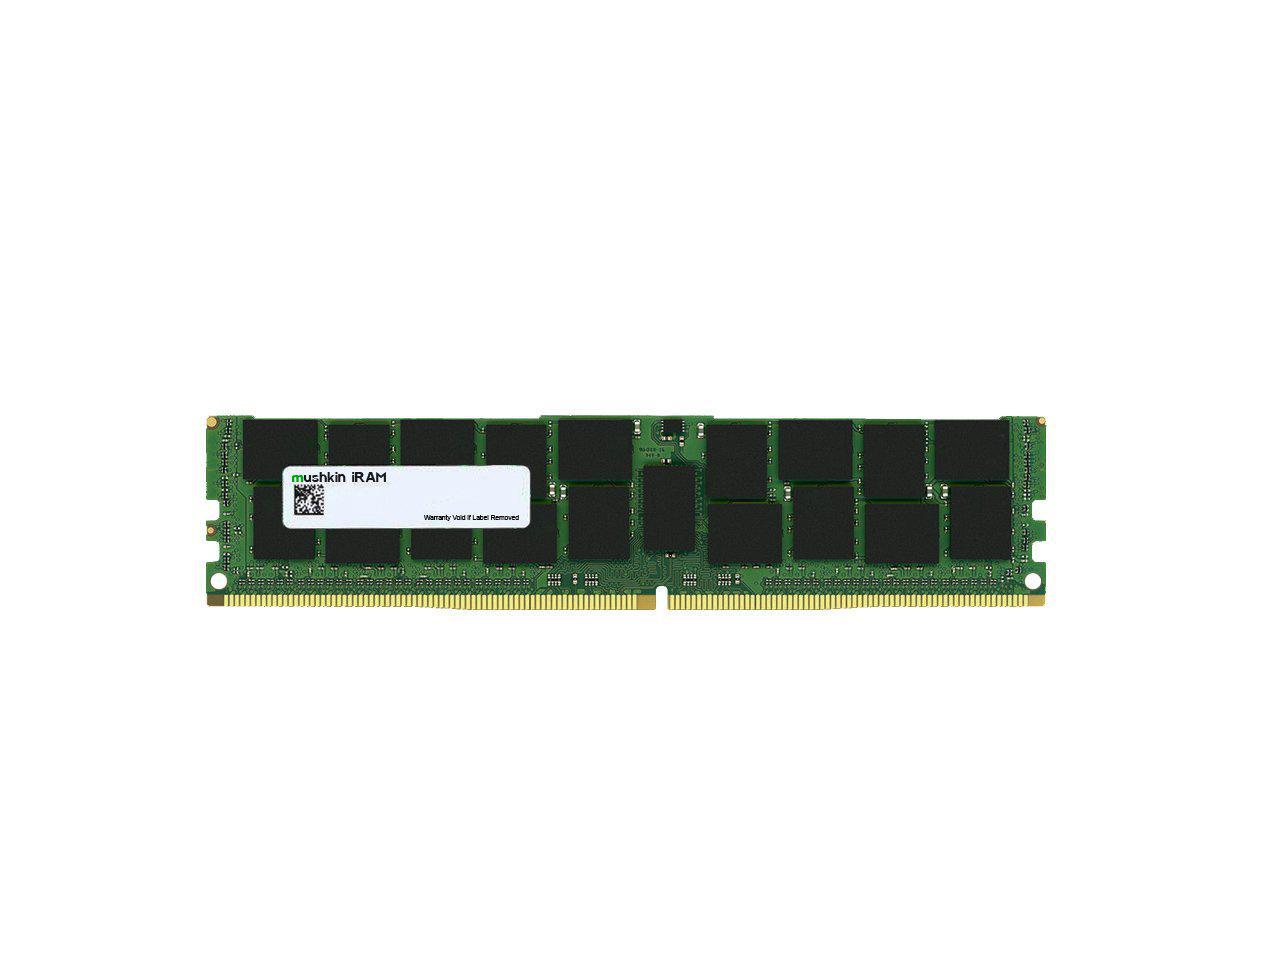 Mushkin 16GB DDR4 RDIMM PC4-2933 Model MAR4R293MF16G14